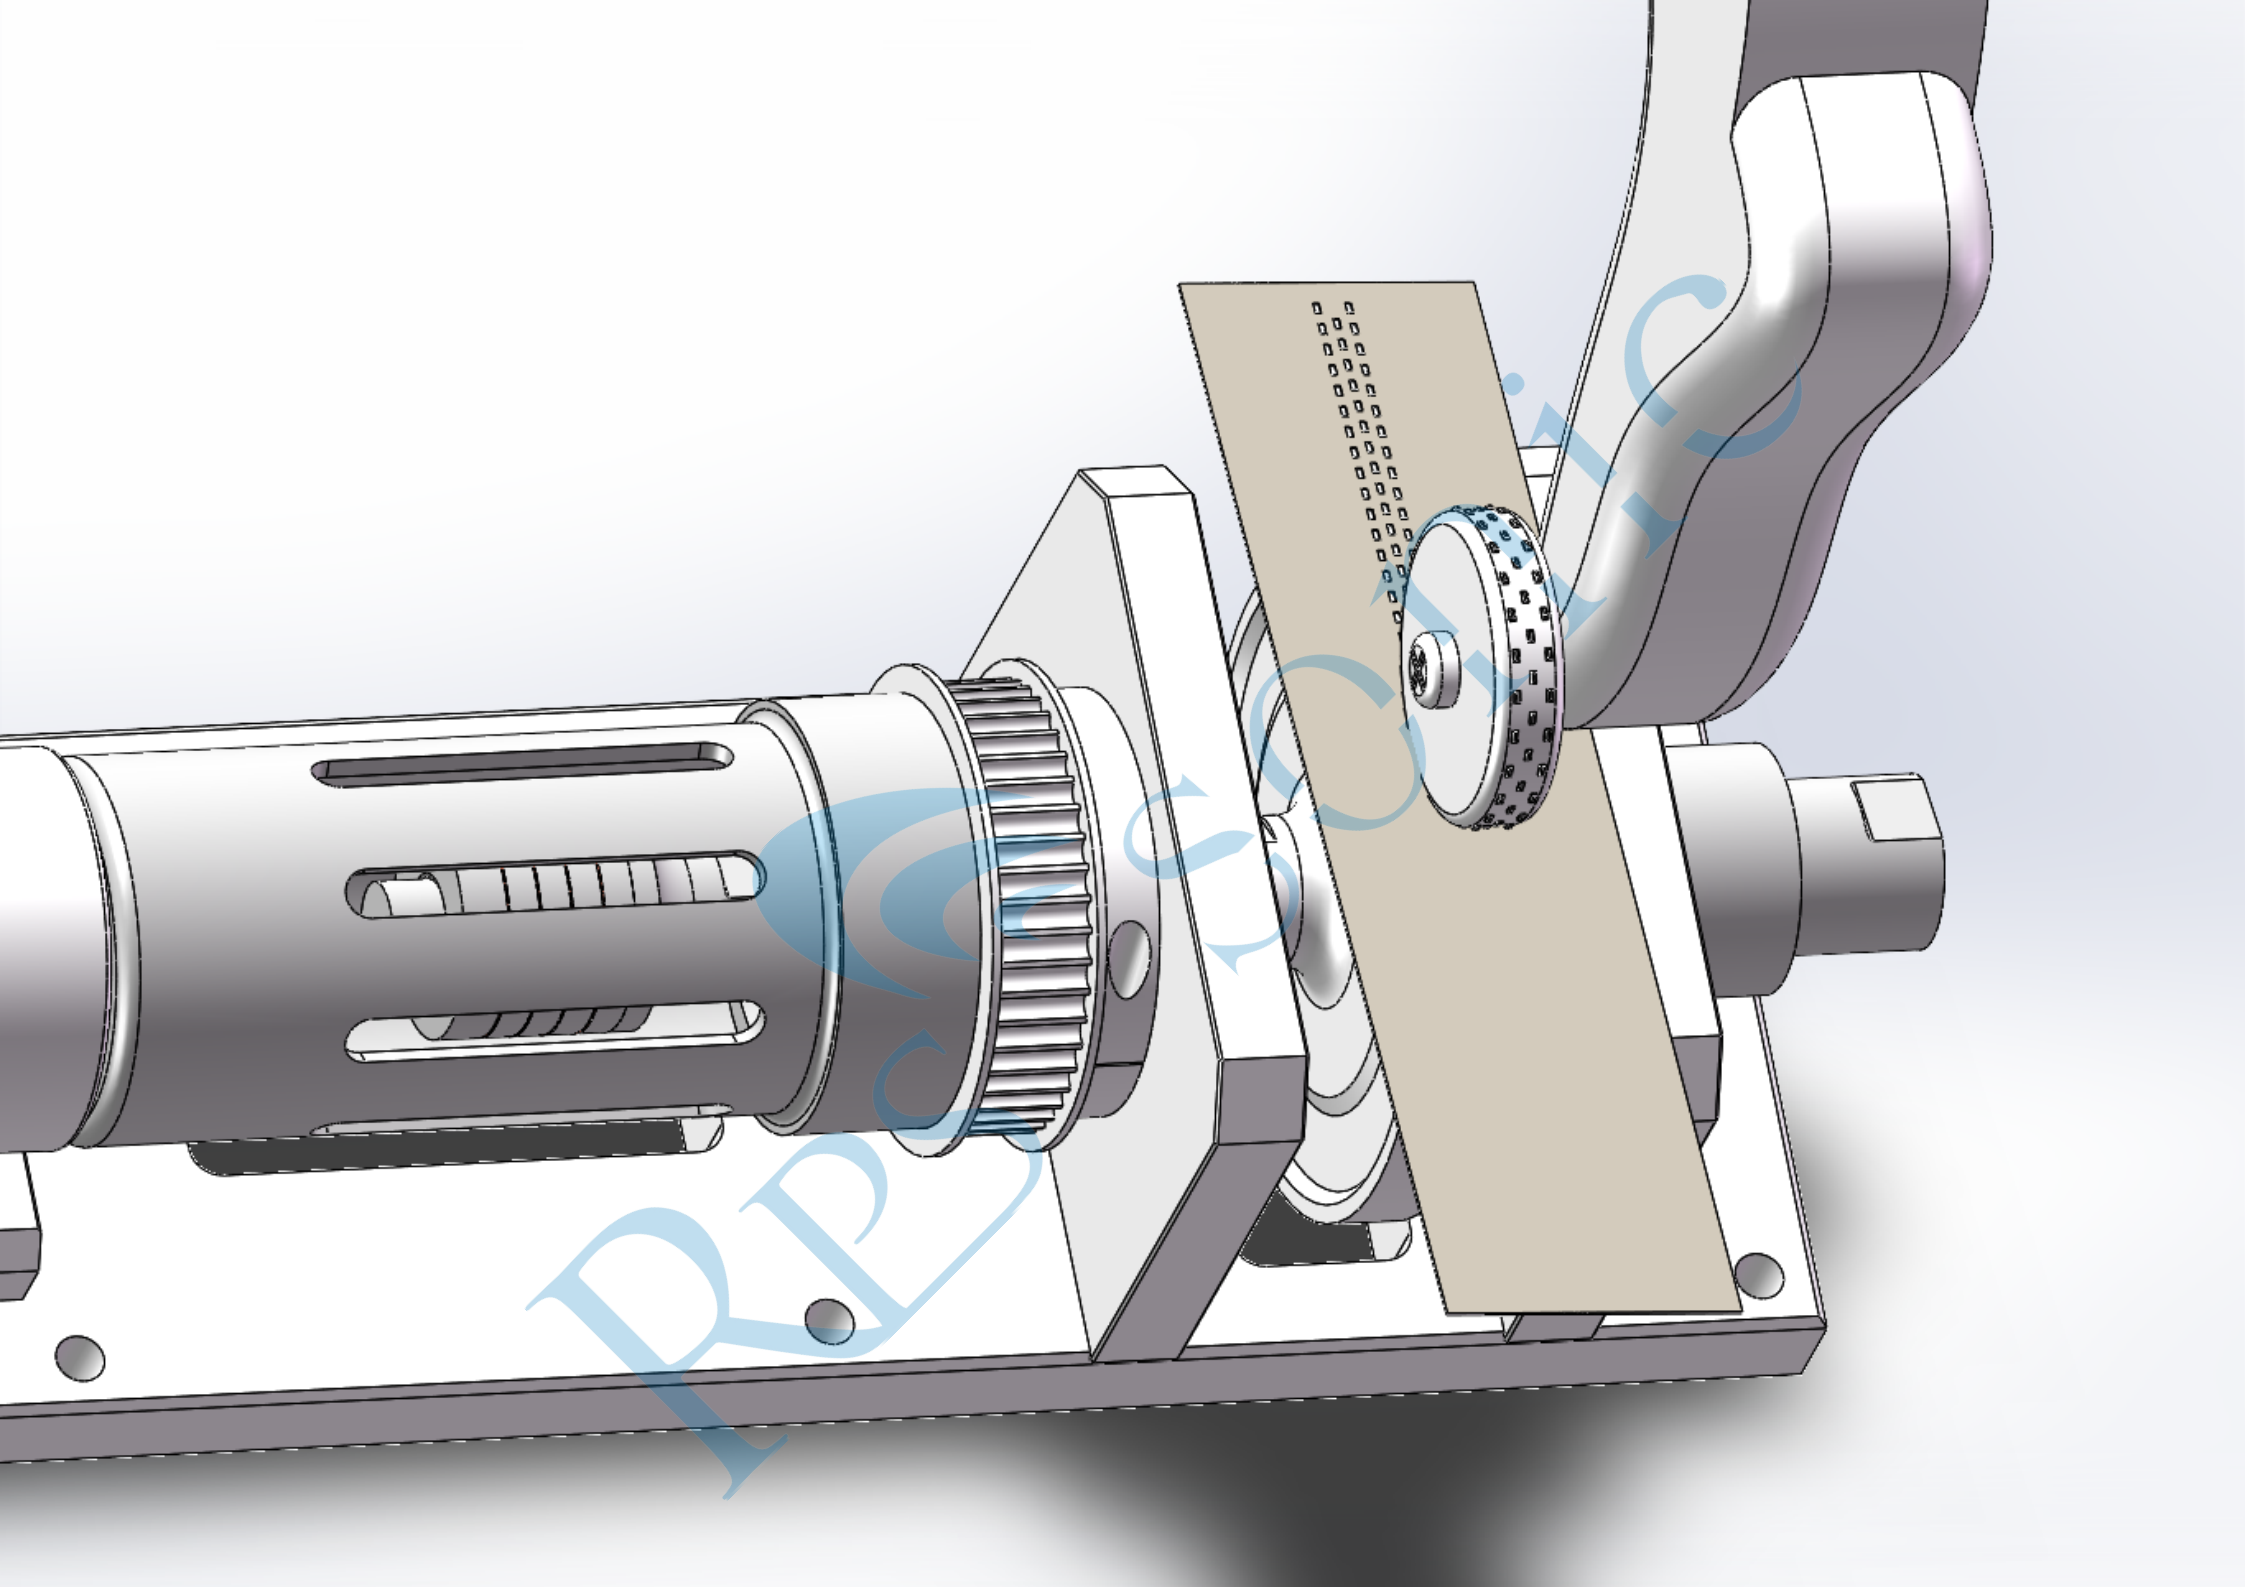 Buzina rotativa ultrassônica simétrica de 35KHZ para soldagem acústica radial